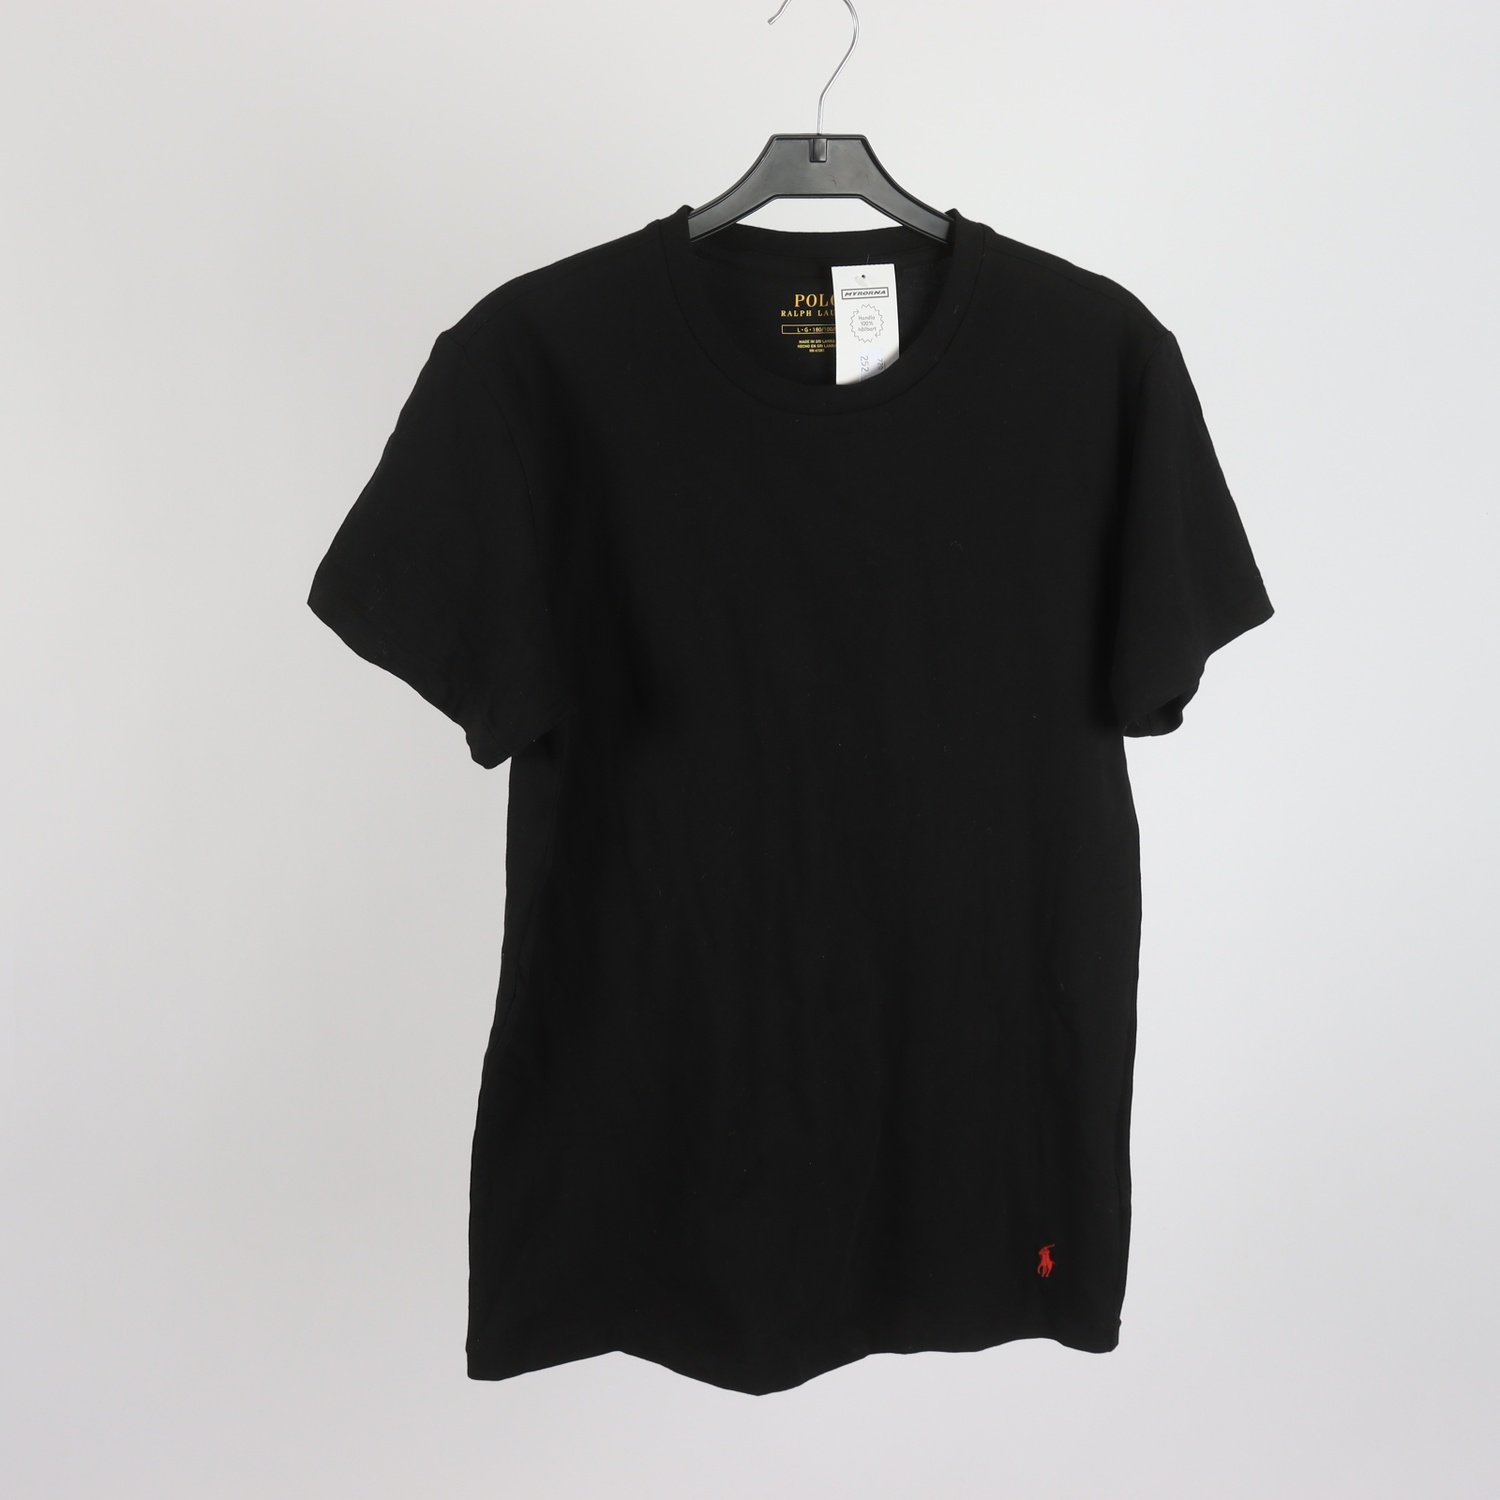 T-shirt, Polo Ralph Lauren, svart, stl. L